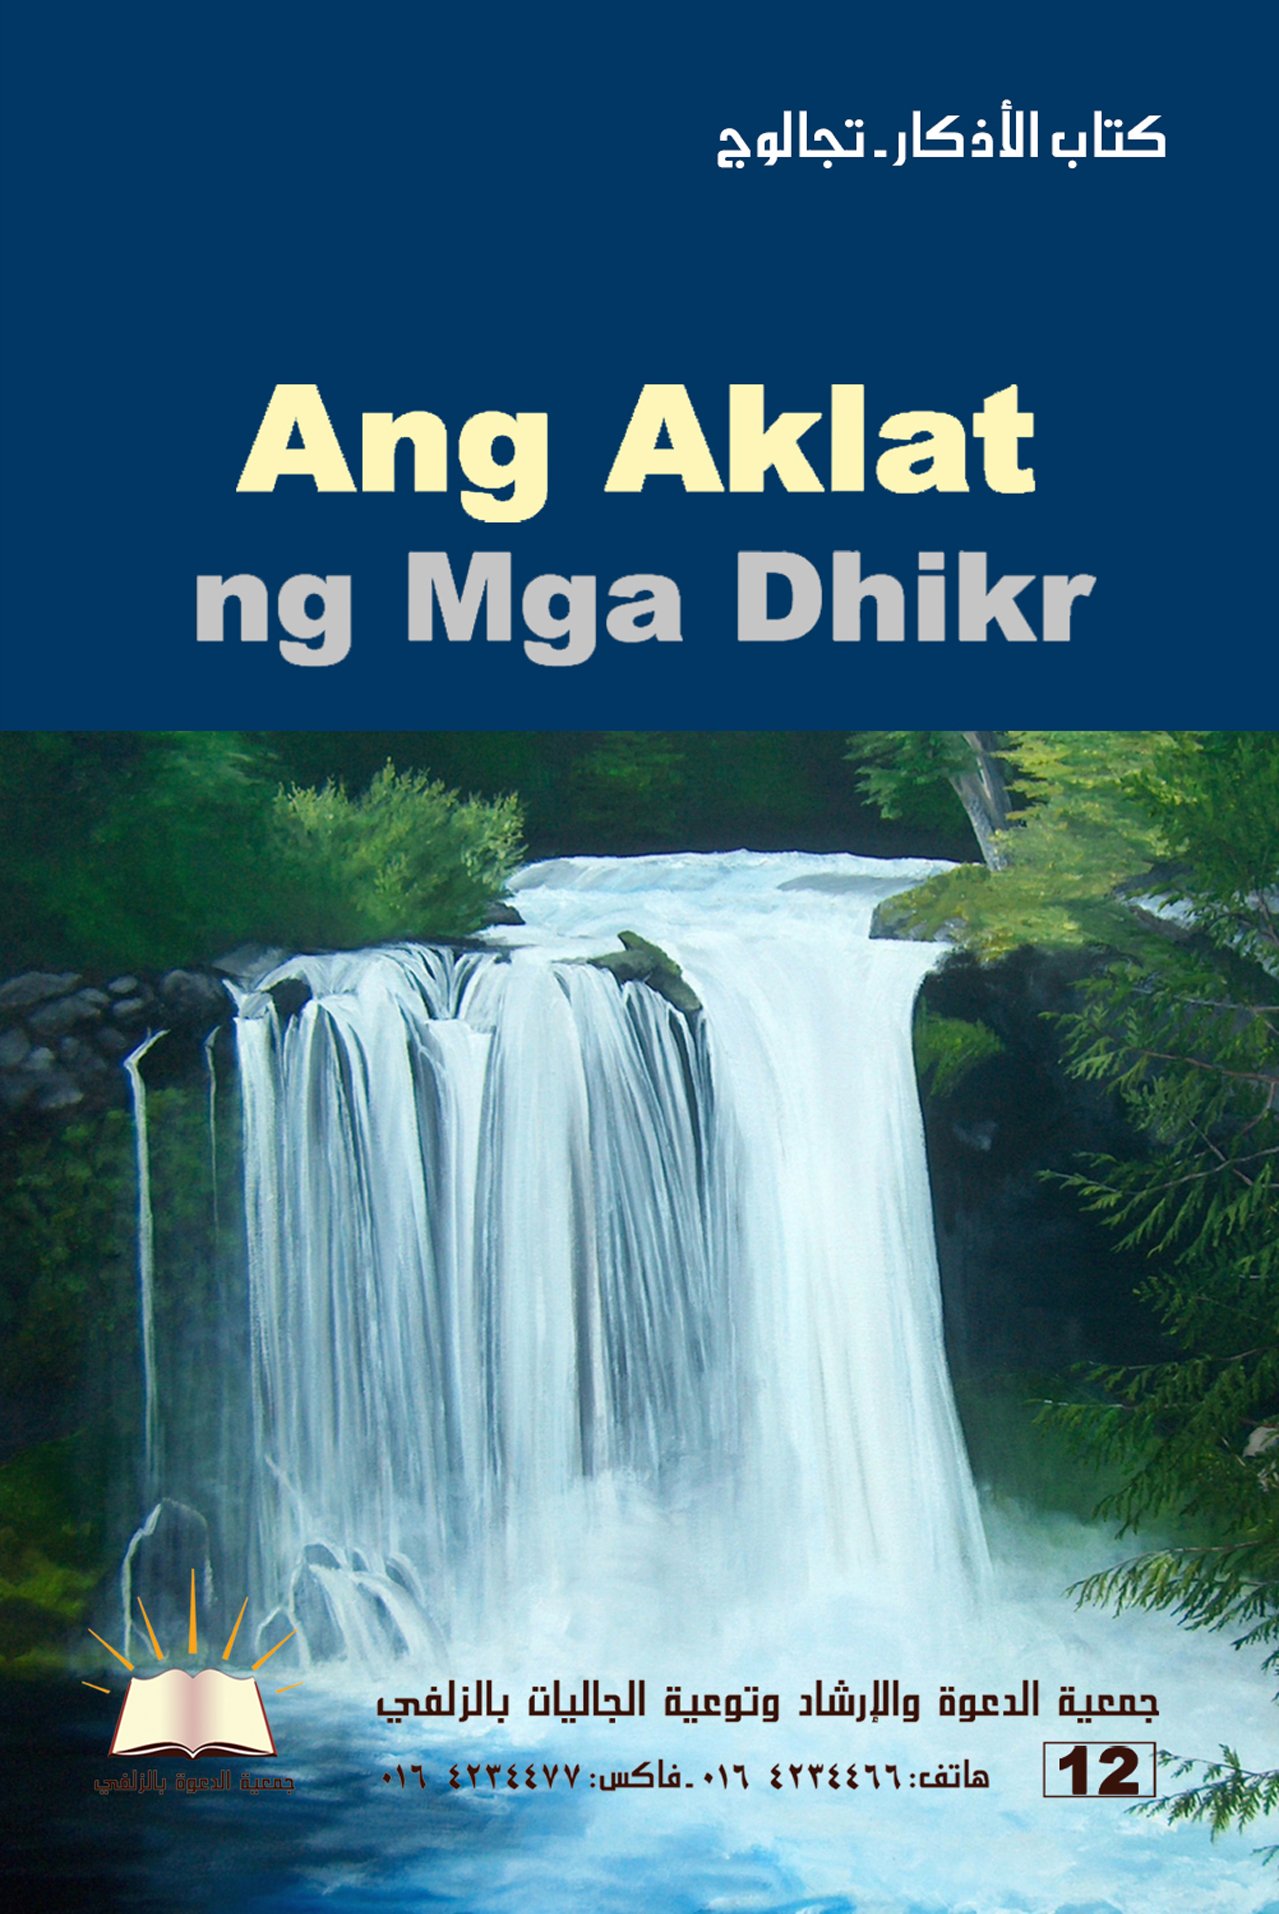 Ang Aklat ng mga Dhikr - كتاب الأذكار